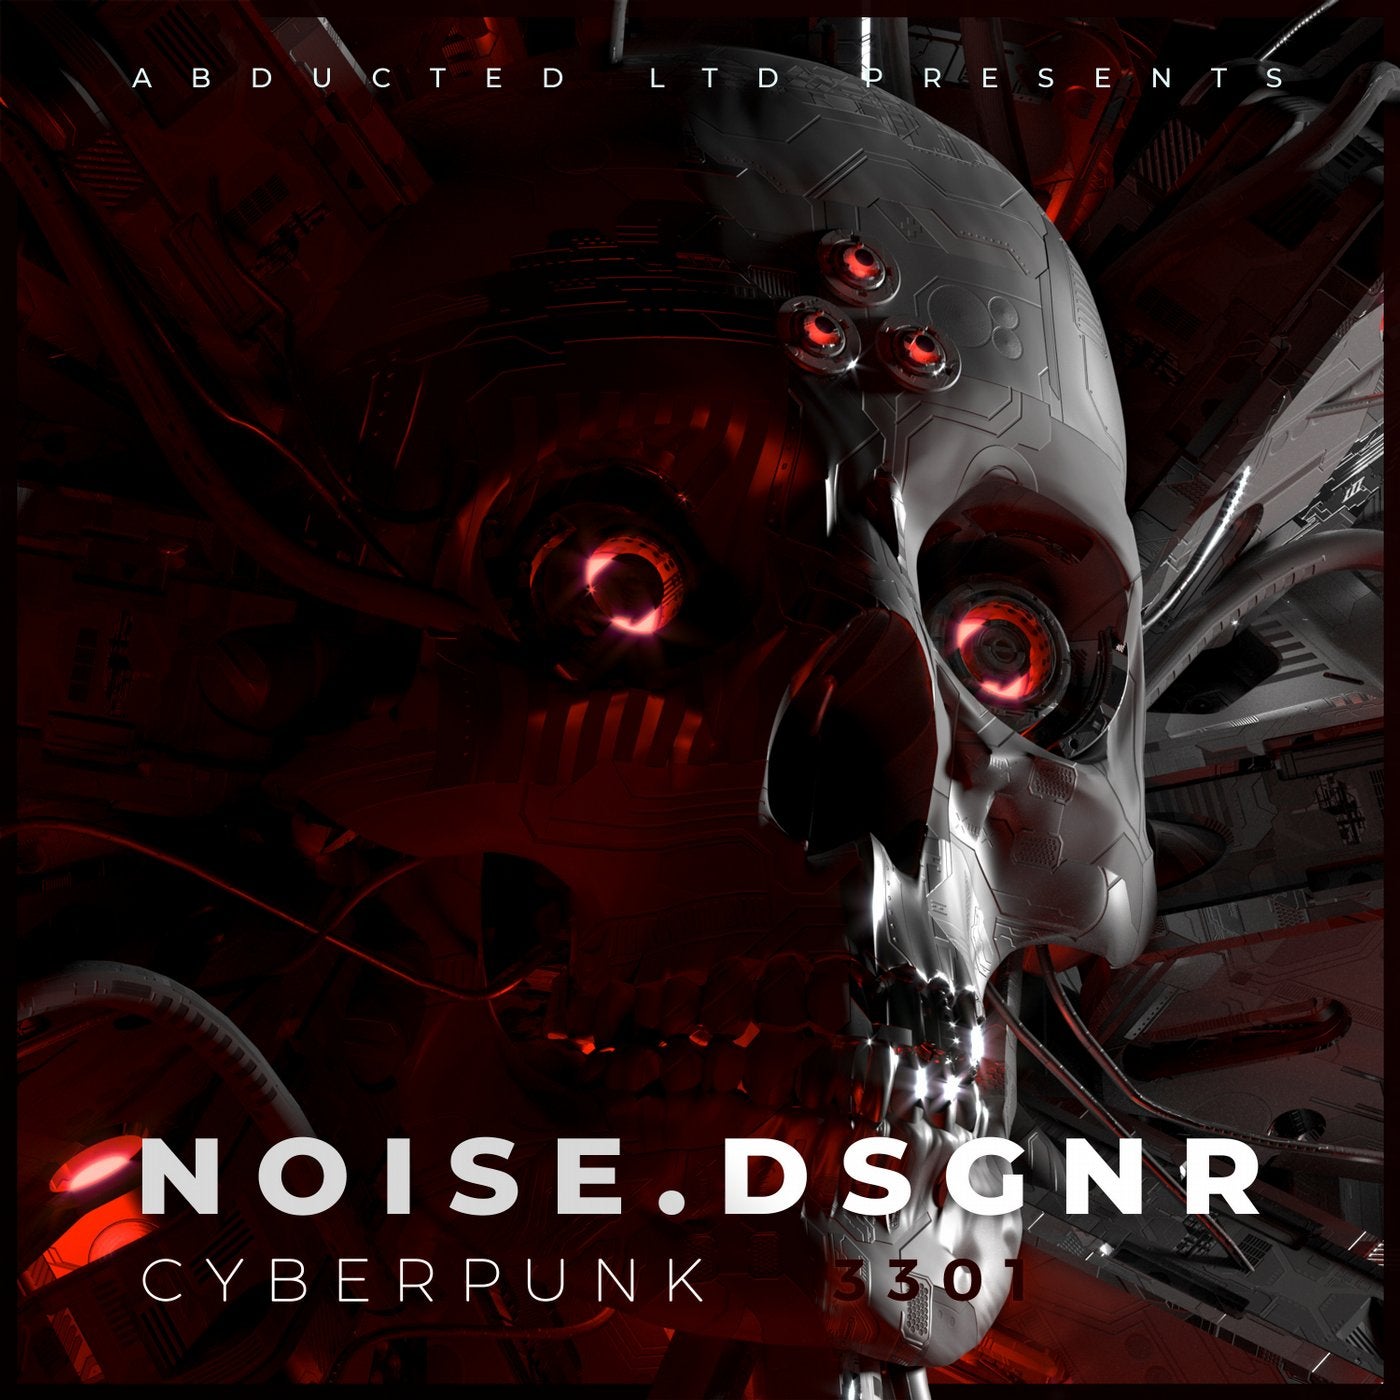 Cyberpunk / 3301